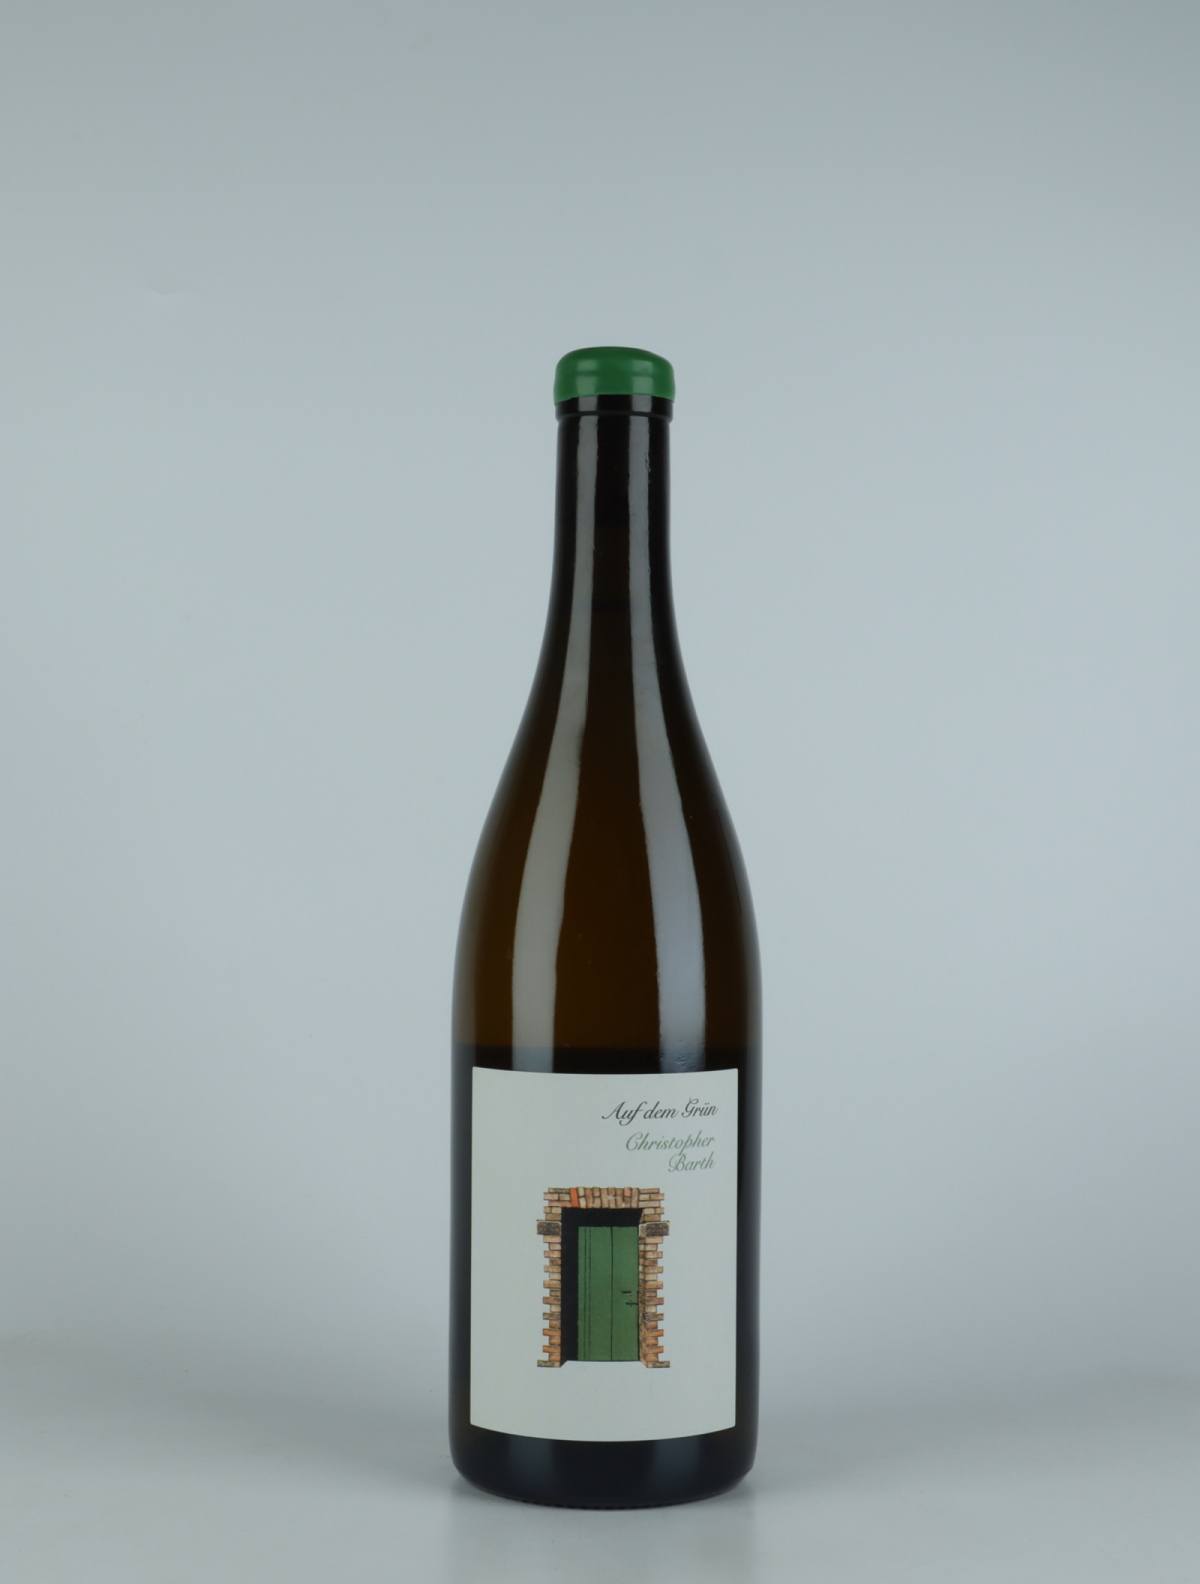 A bottle 2019 Auf dem Grün Riesling White wine from Christopher Barth, Rheinhessen in Germany